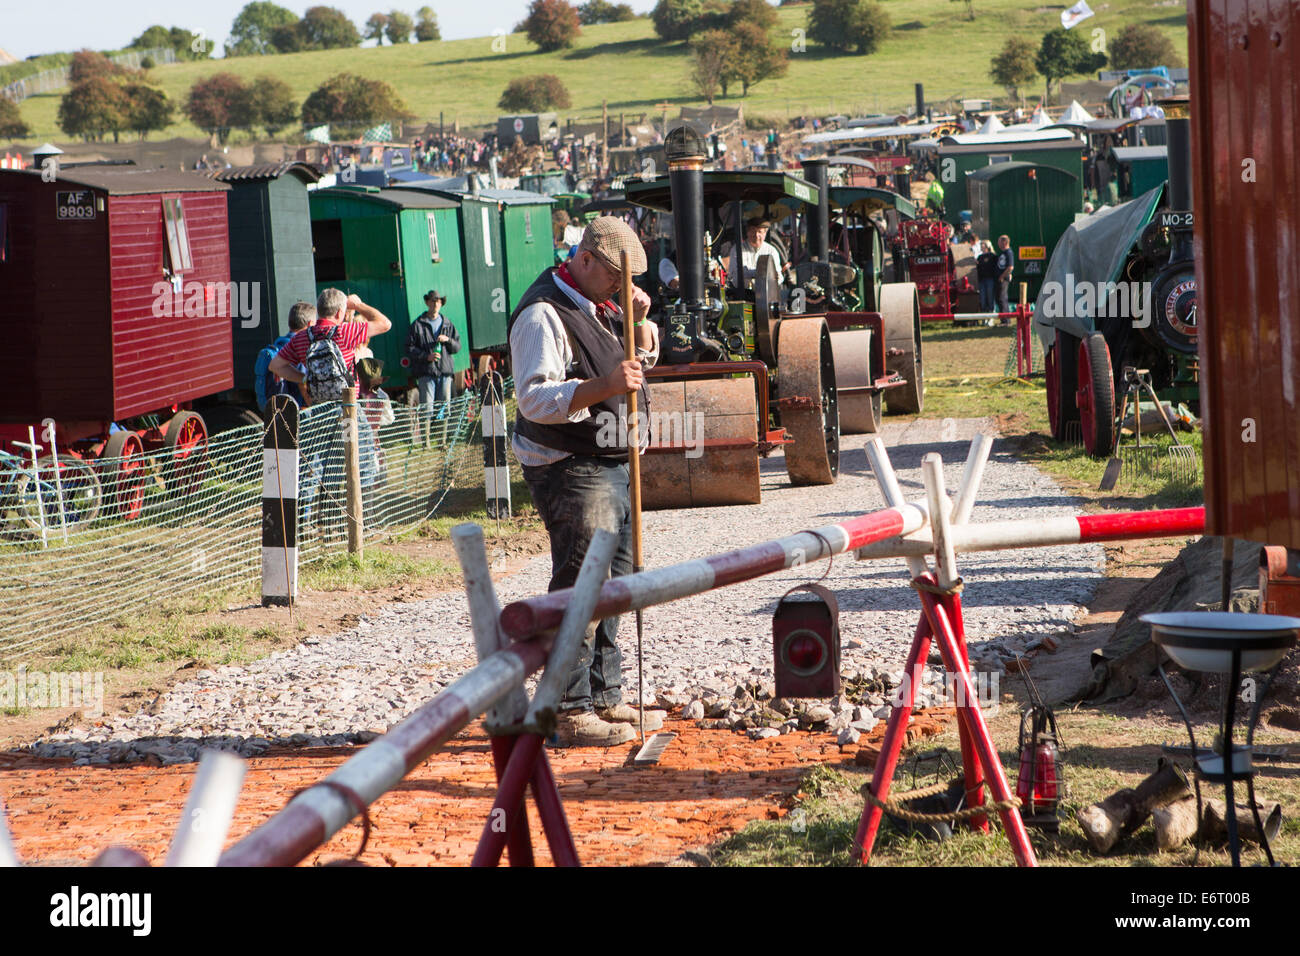 Tarrant Hinton, Dorset, UK. 28. August 2014. Die Great Dorset Steam Fair, Tarrant Hinton, Dorset, UK. Traditionelle Straße auftauchen Methoden angezeigt Credit: Zach Williams/Alamy Live News Stockfoto